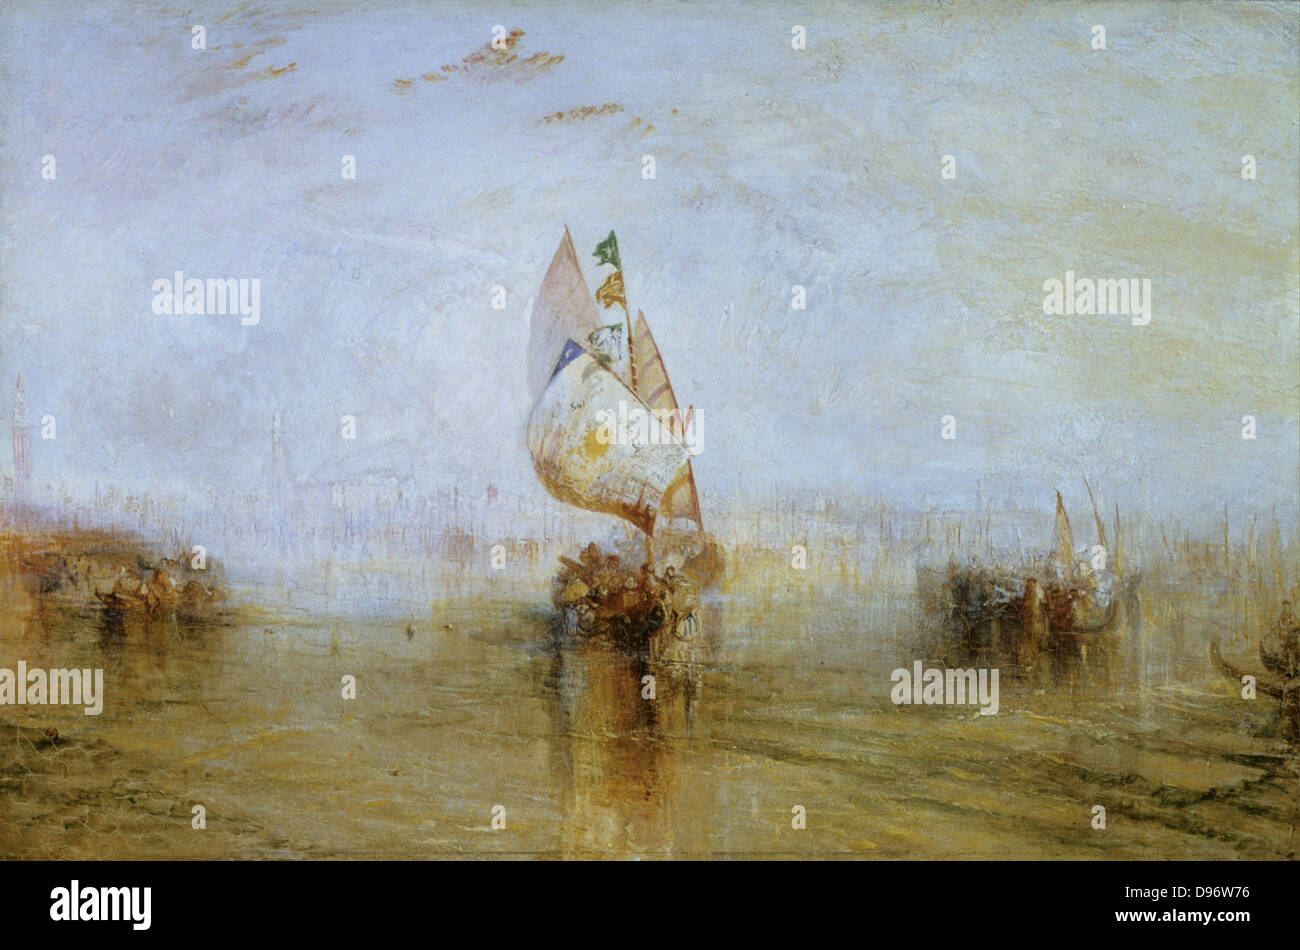 La Venise de 'Sun''Aller à la mer' exposées 1843 : Joseph Mallord William Turner (1775-1851) l'artiste anglais. Huile sur toile. Banque D'Images